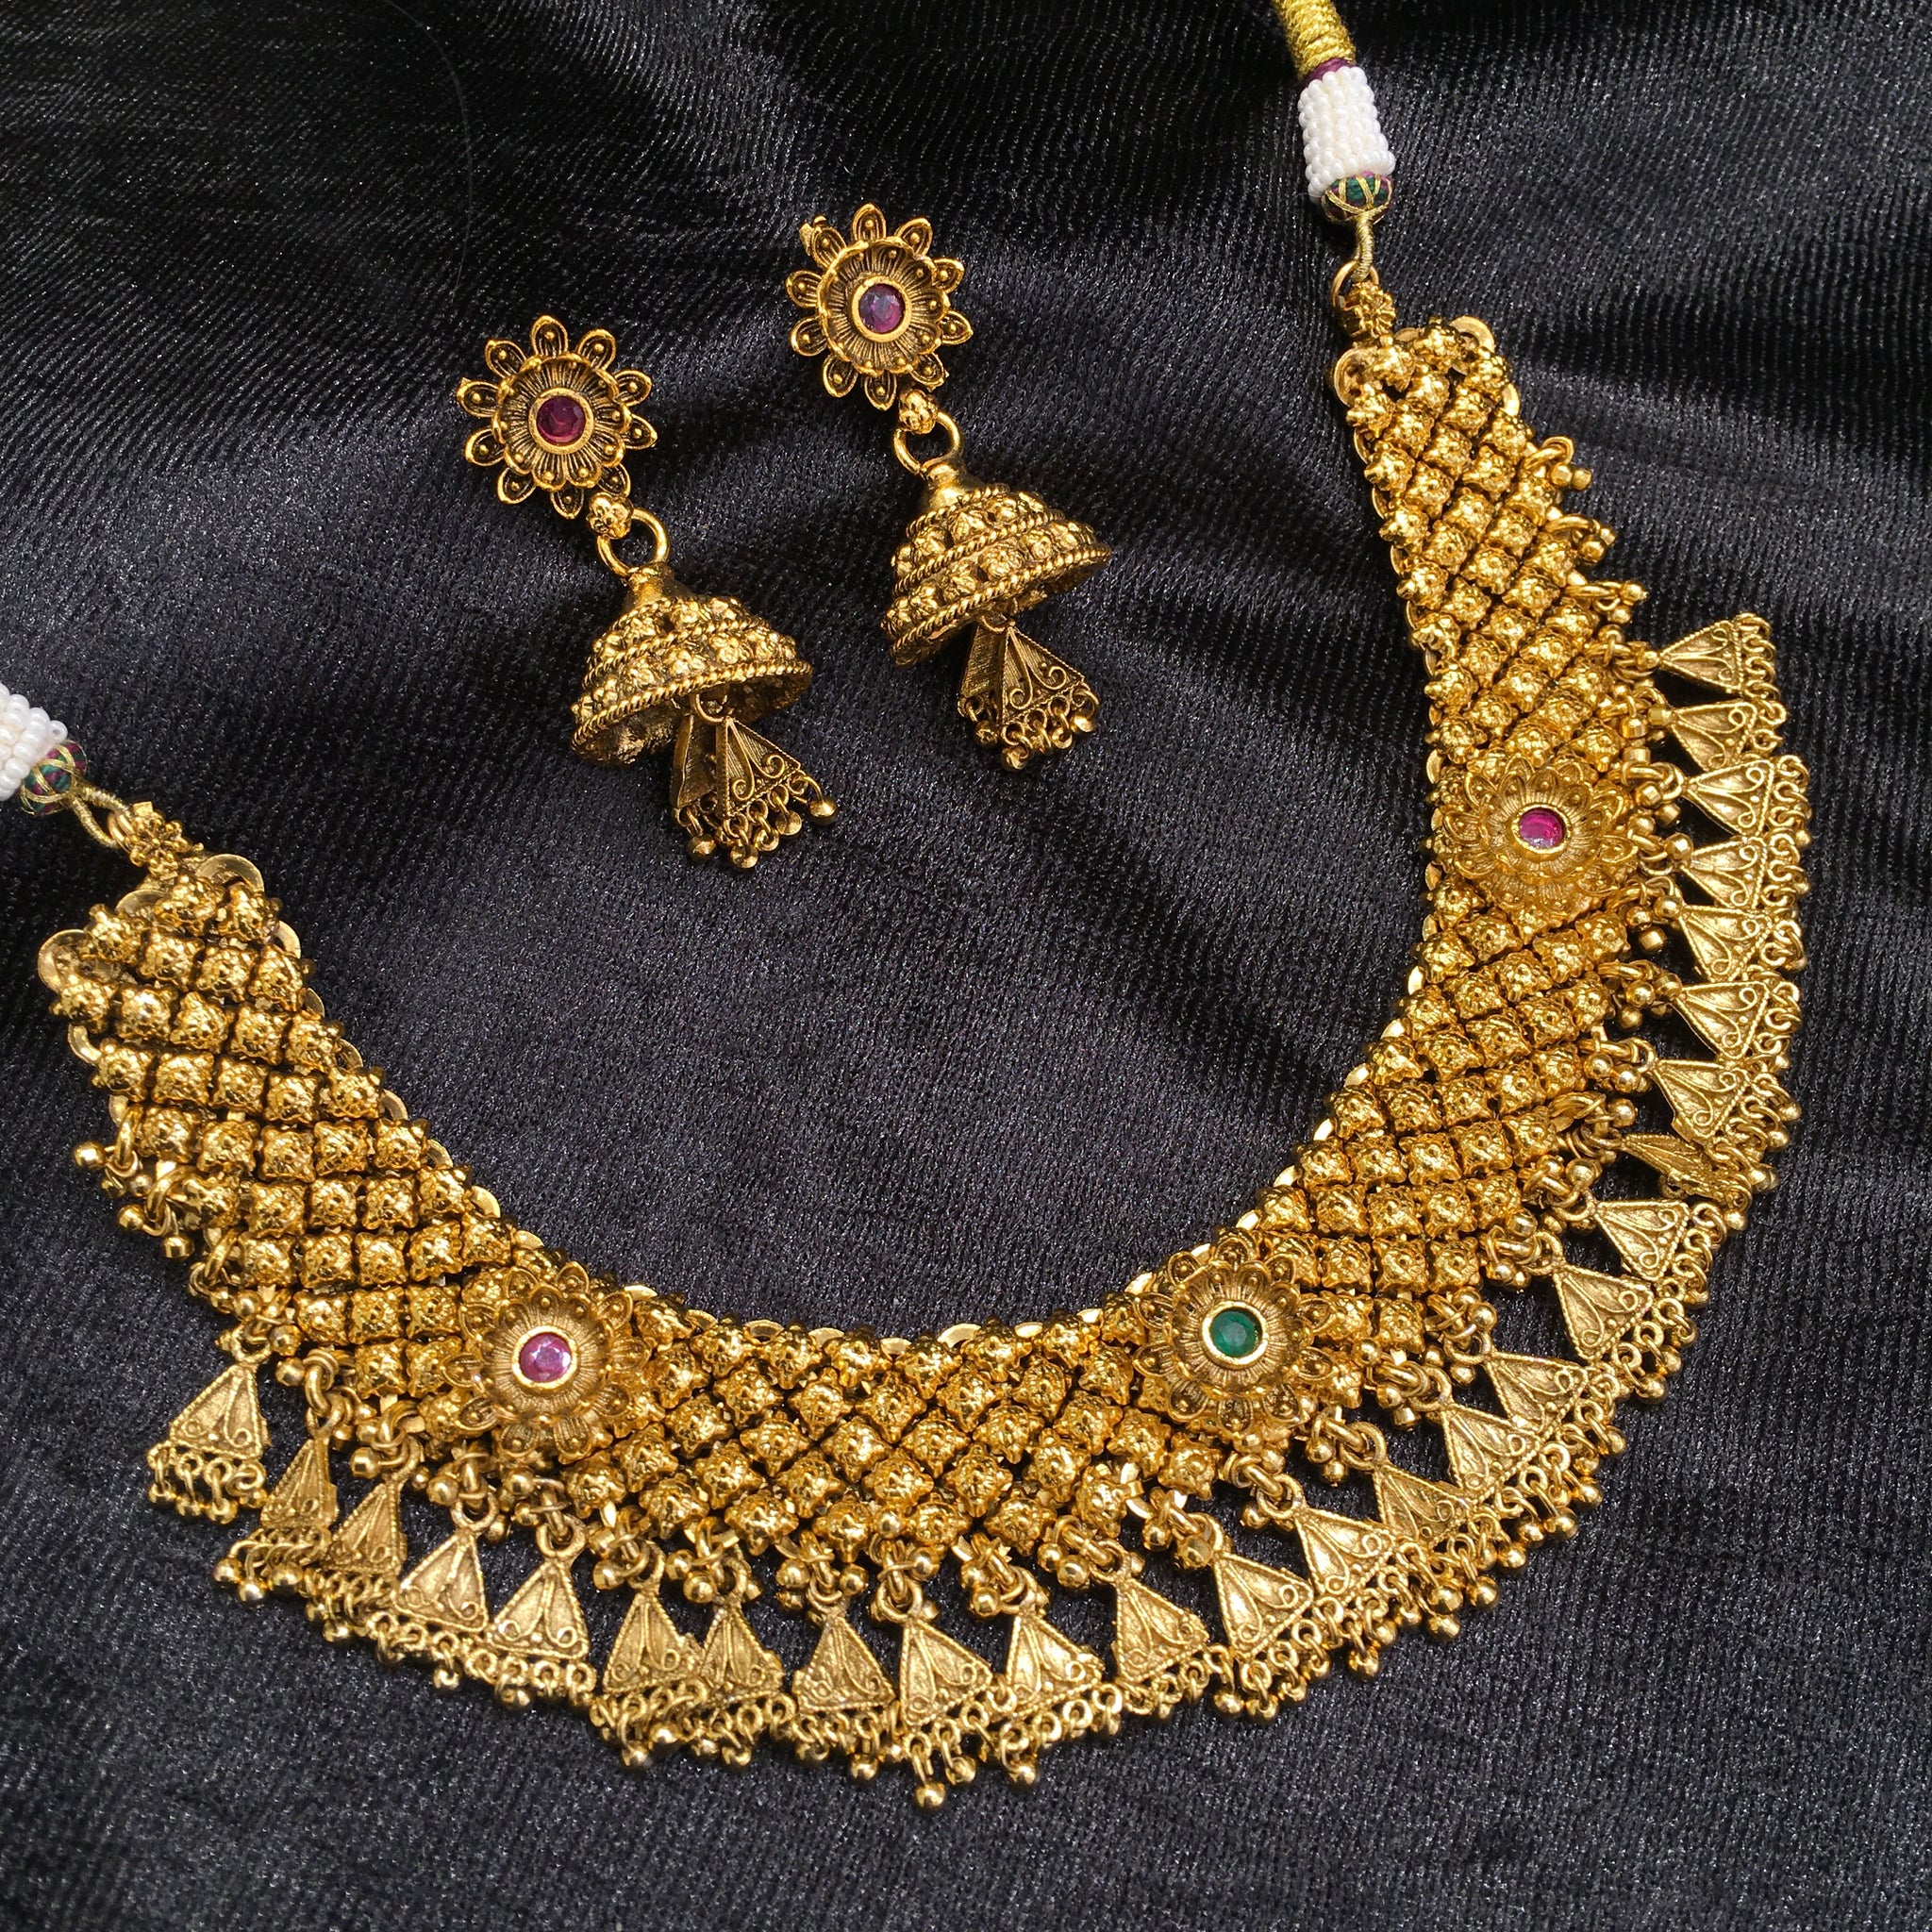 Round Neck Antique Necklace Set 4570-1 - Dazzles Jewellery